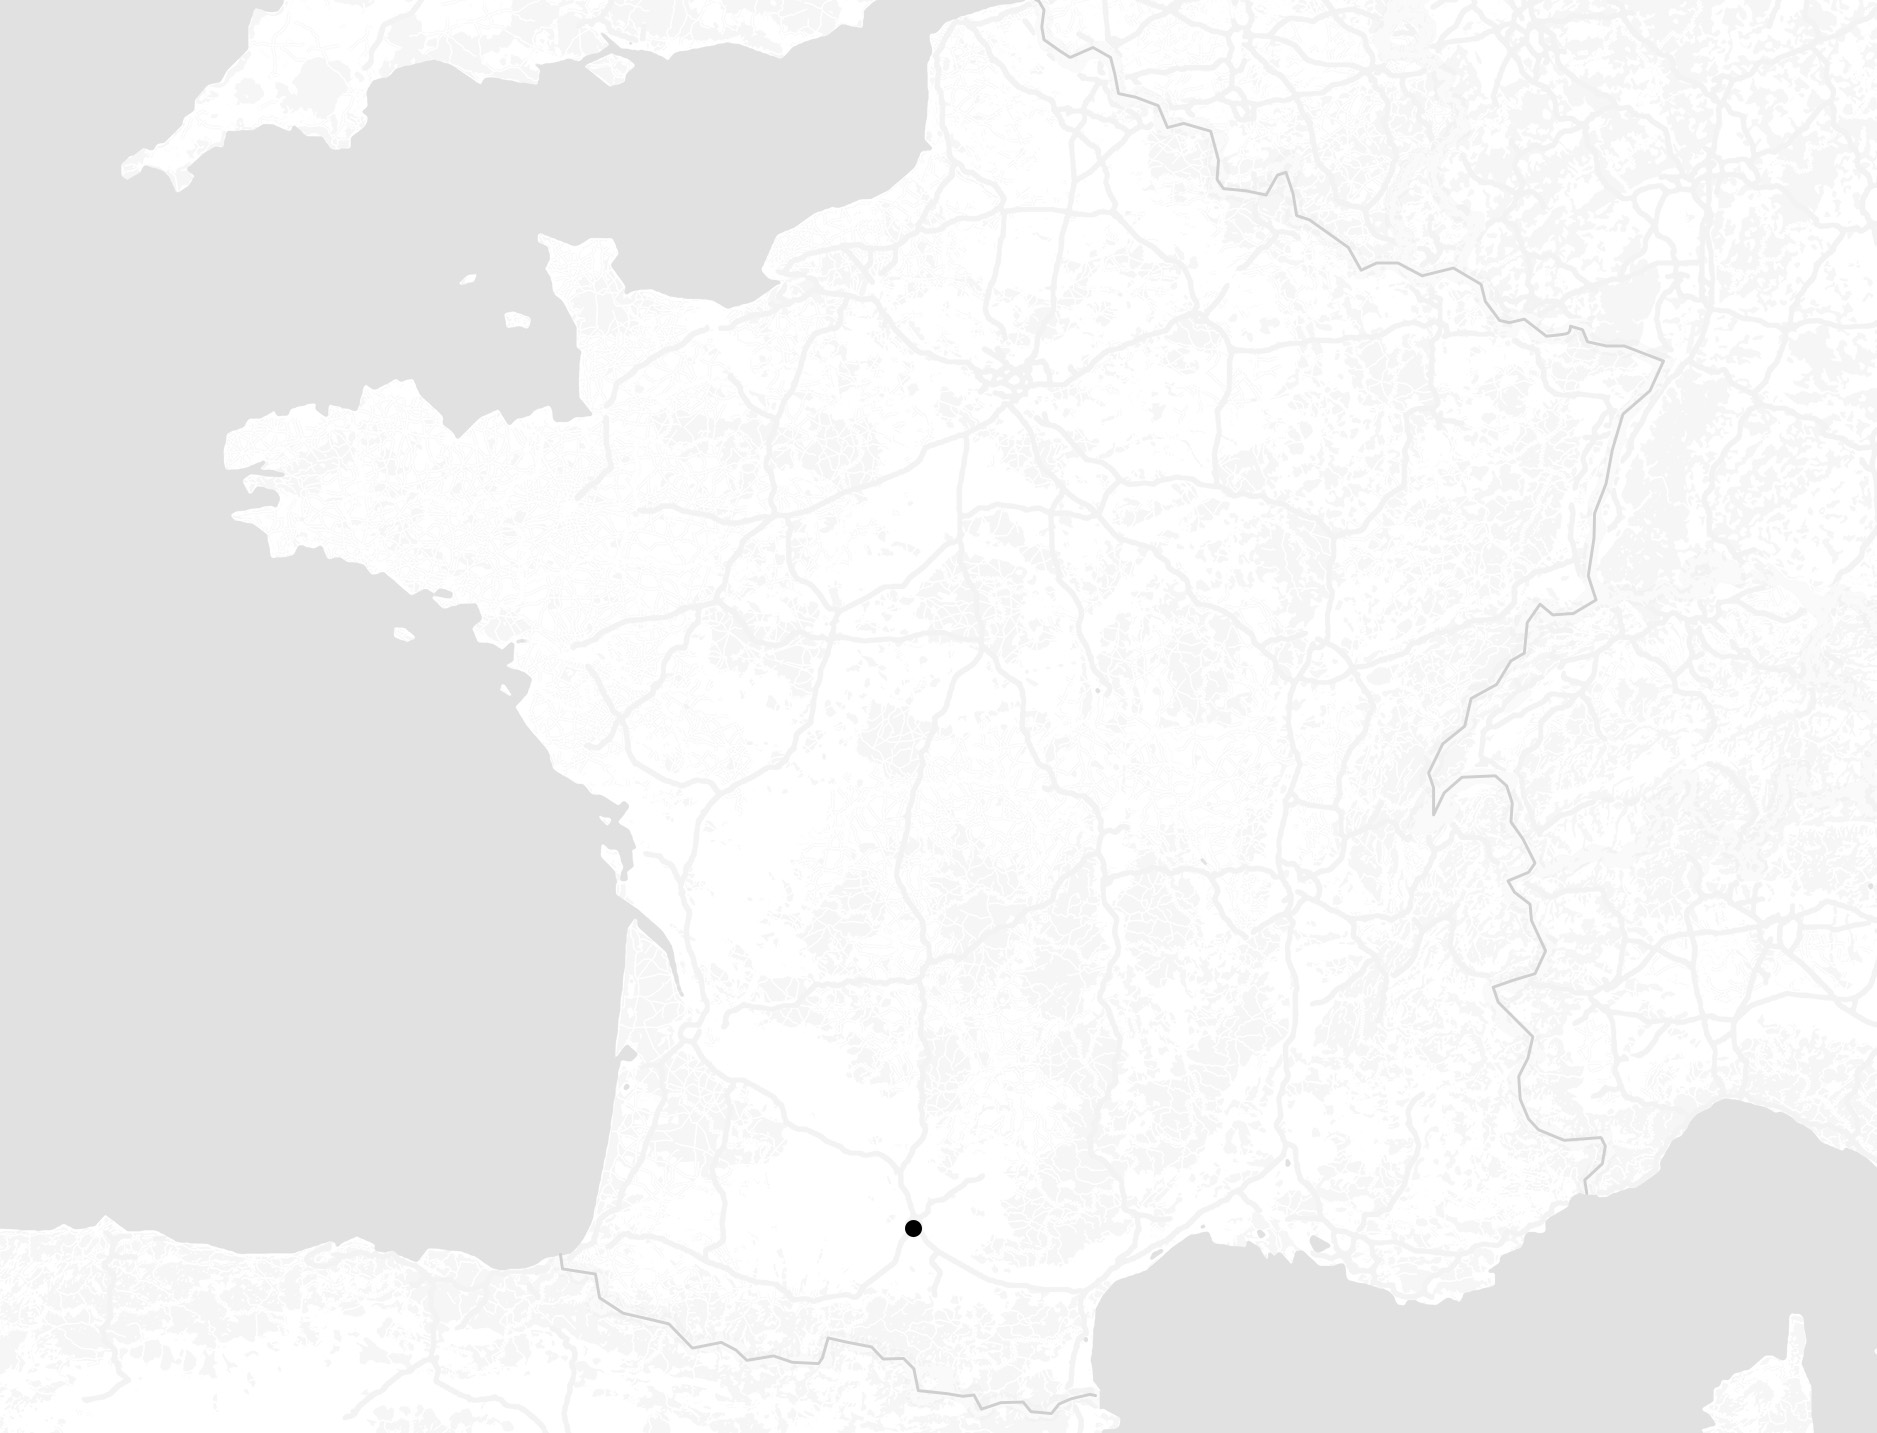 Illustration de la carte de France en niveau de gris avec un point noir sur la situation géographique de TOULOUSE